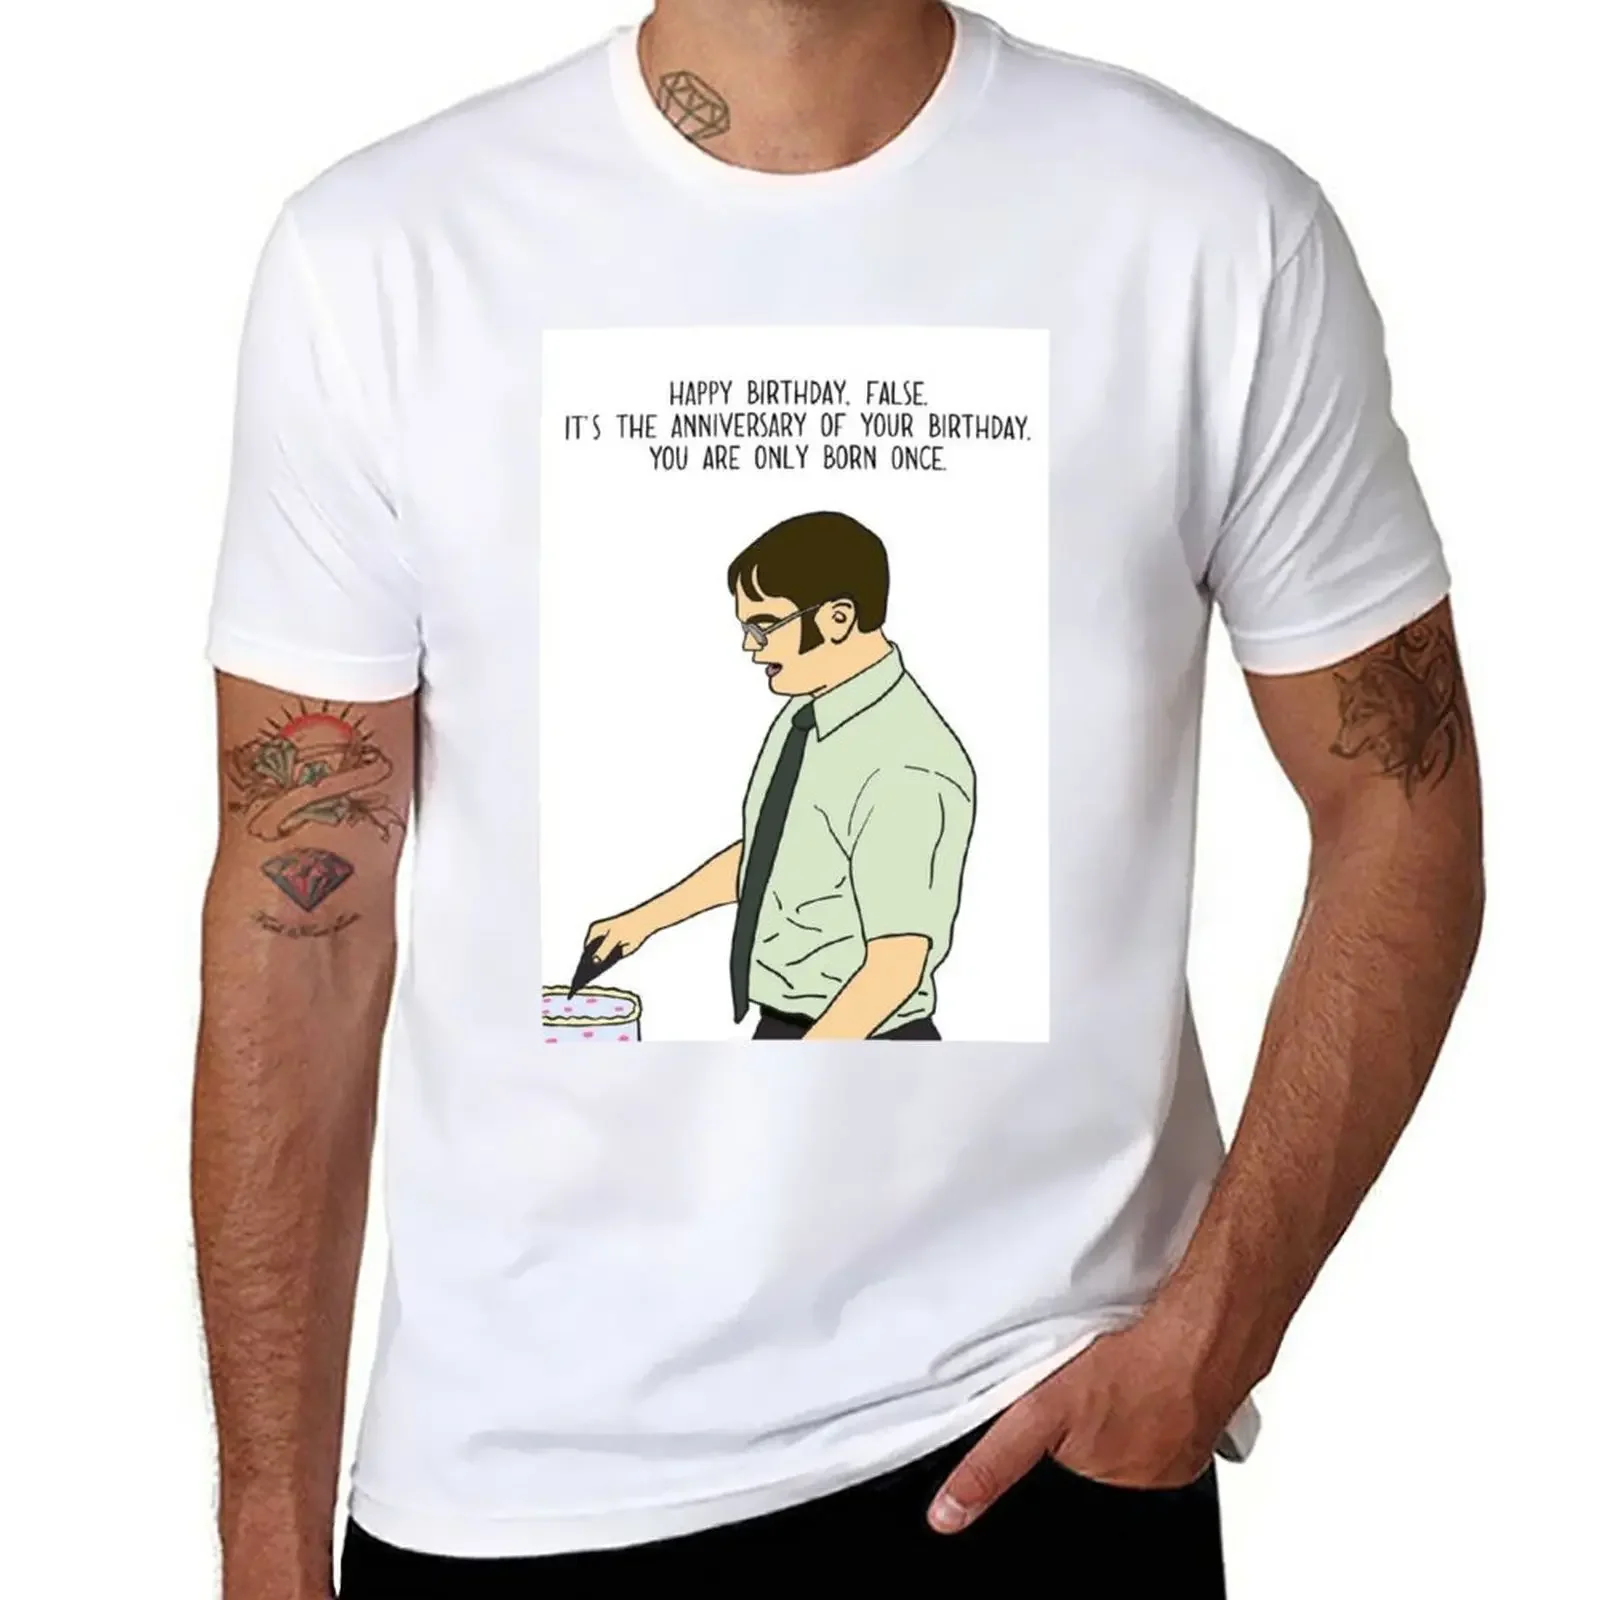 

Футболка с рисунком на день рождения, Симпатичные топы, рубашки, футболки с графическим рисунком, эстетическая одежда, блузка, дизайнерская футболка для мужчин